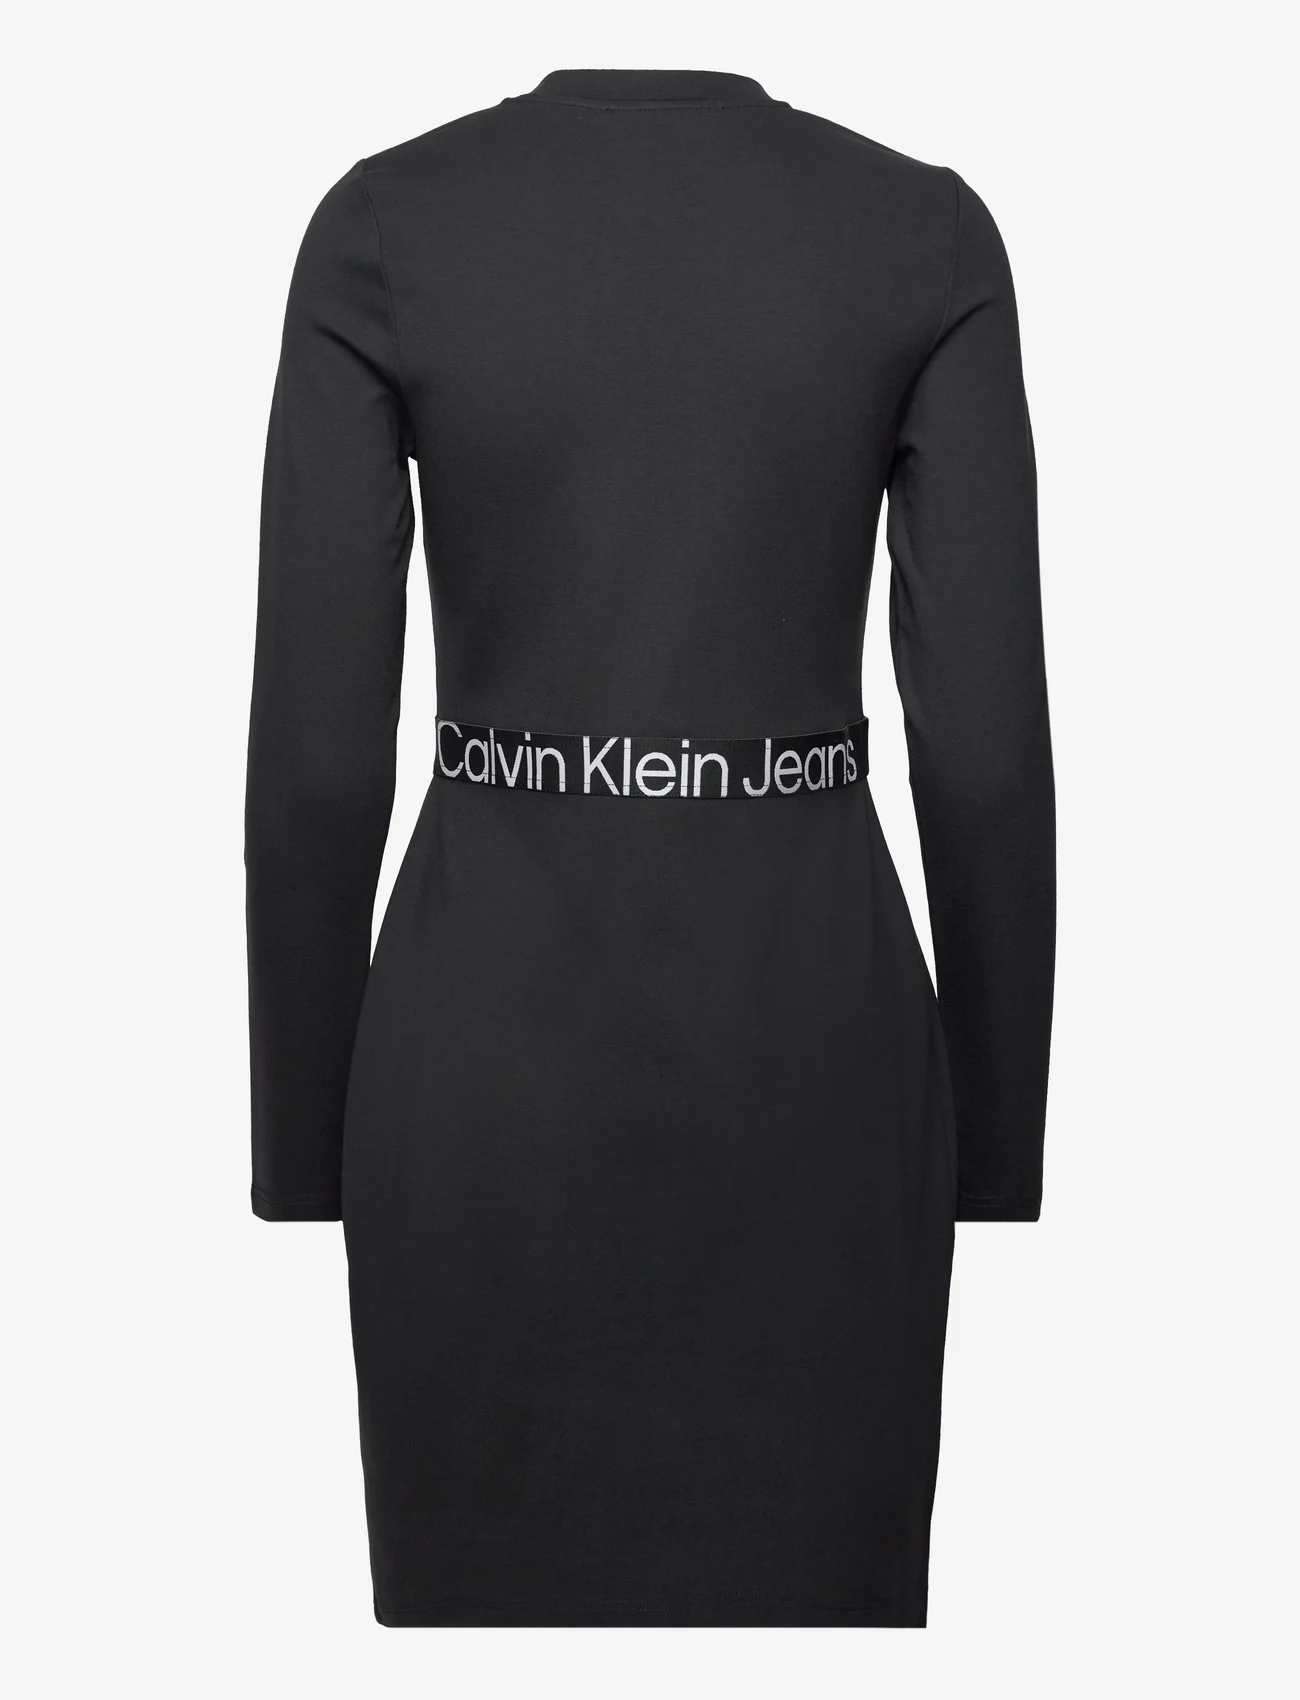 Calvin Klein Jeans - LOGO ELASTIC MILANO LS DRESS - tettsittende kjoler - ck black - 1